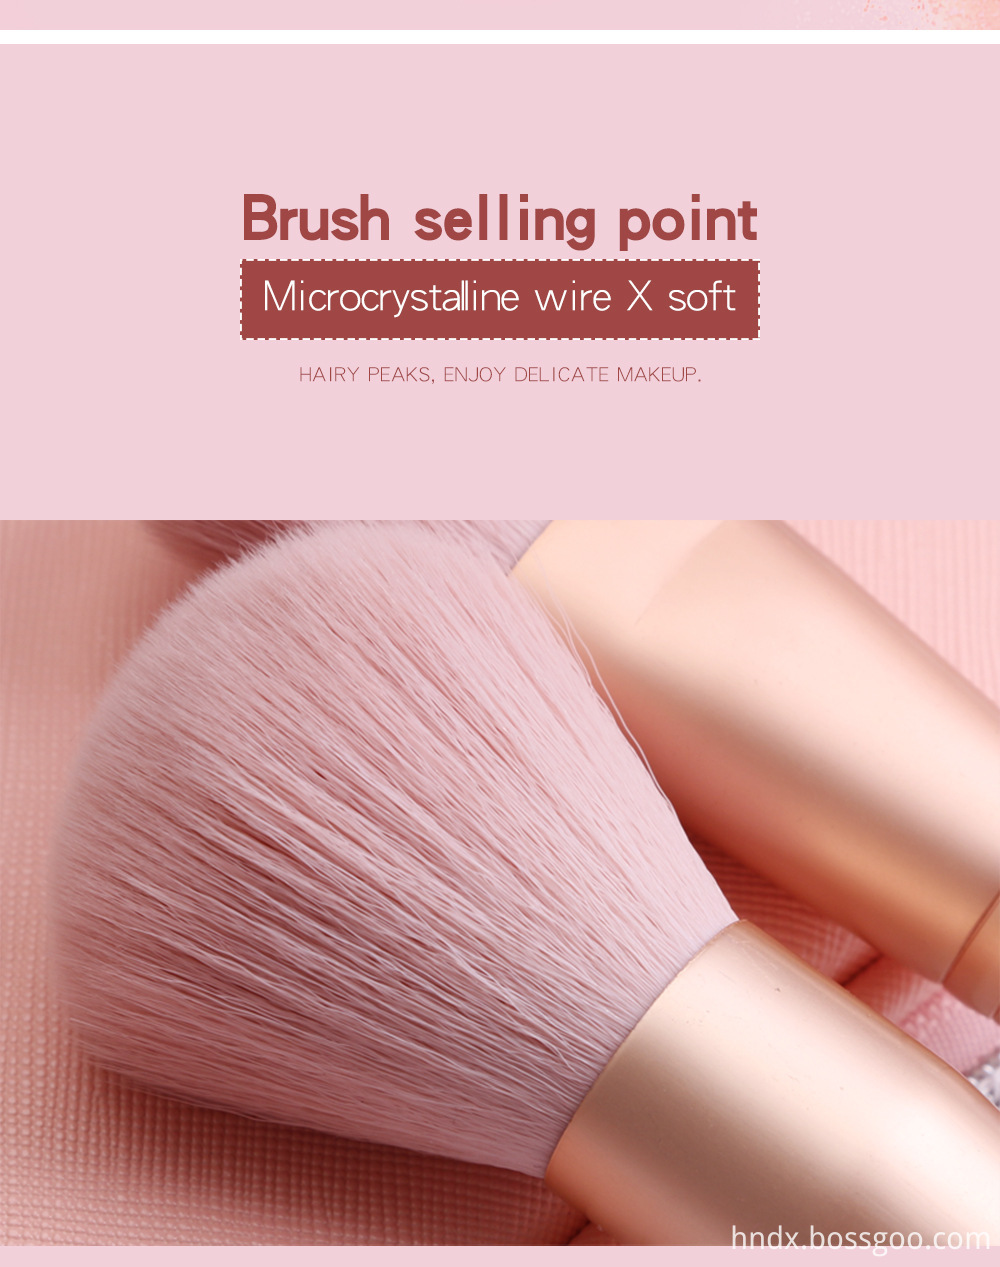 10 Piece Pink Makeup Brush Set